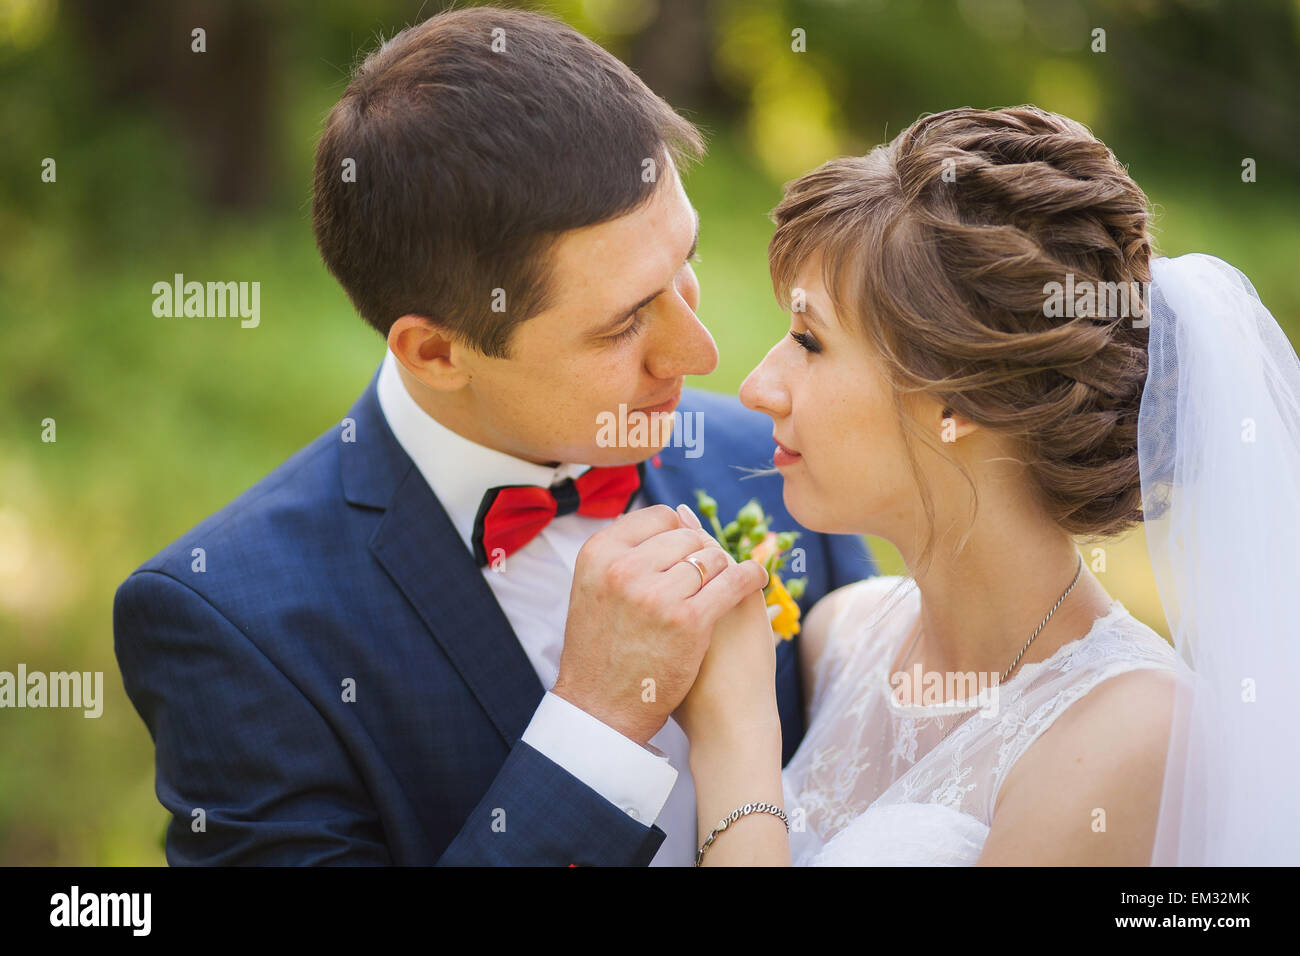 Glückliche Braut, Bräutigam, stehend im grünen Park, küssen, Lächeln, lachen. Close-up Stockfoto